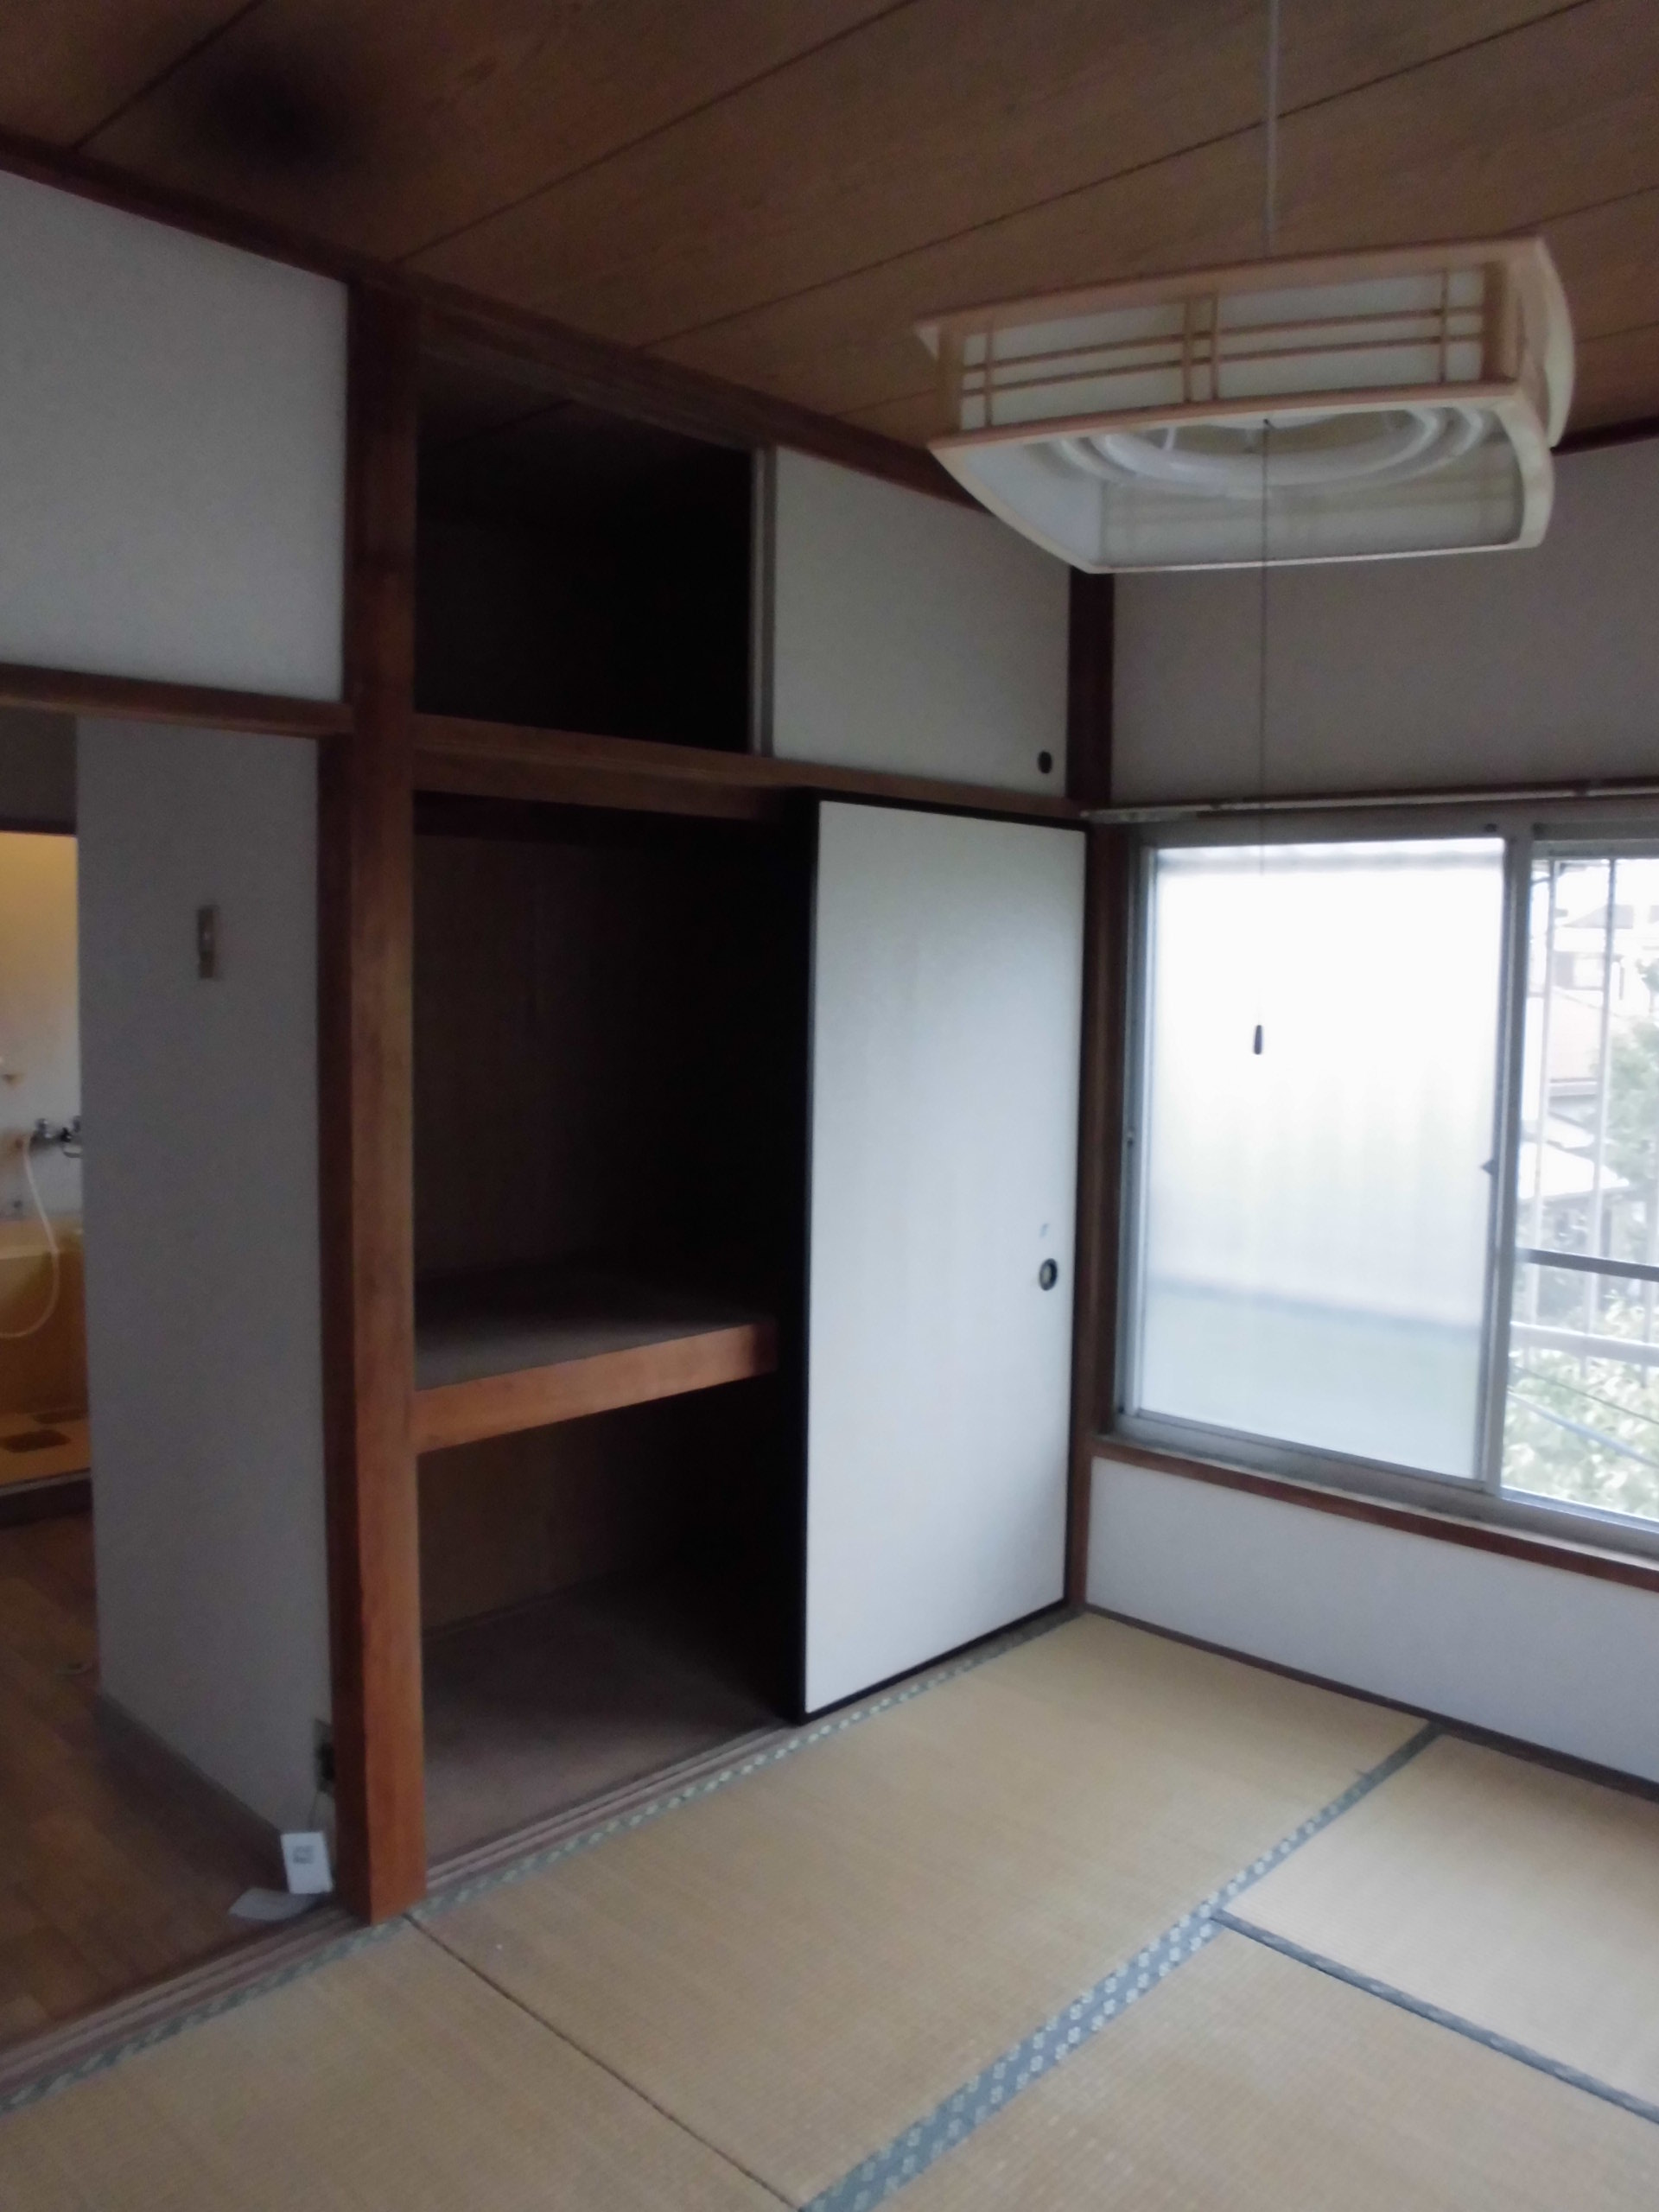 和室 アパート 畳からフローリングにリフォーム 白楽や神奈川区 港北区周辺の不動産 賃貸 売買 リフォームなら横浜ネットホーム